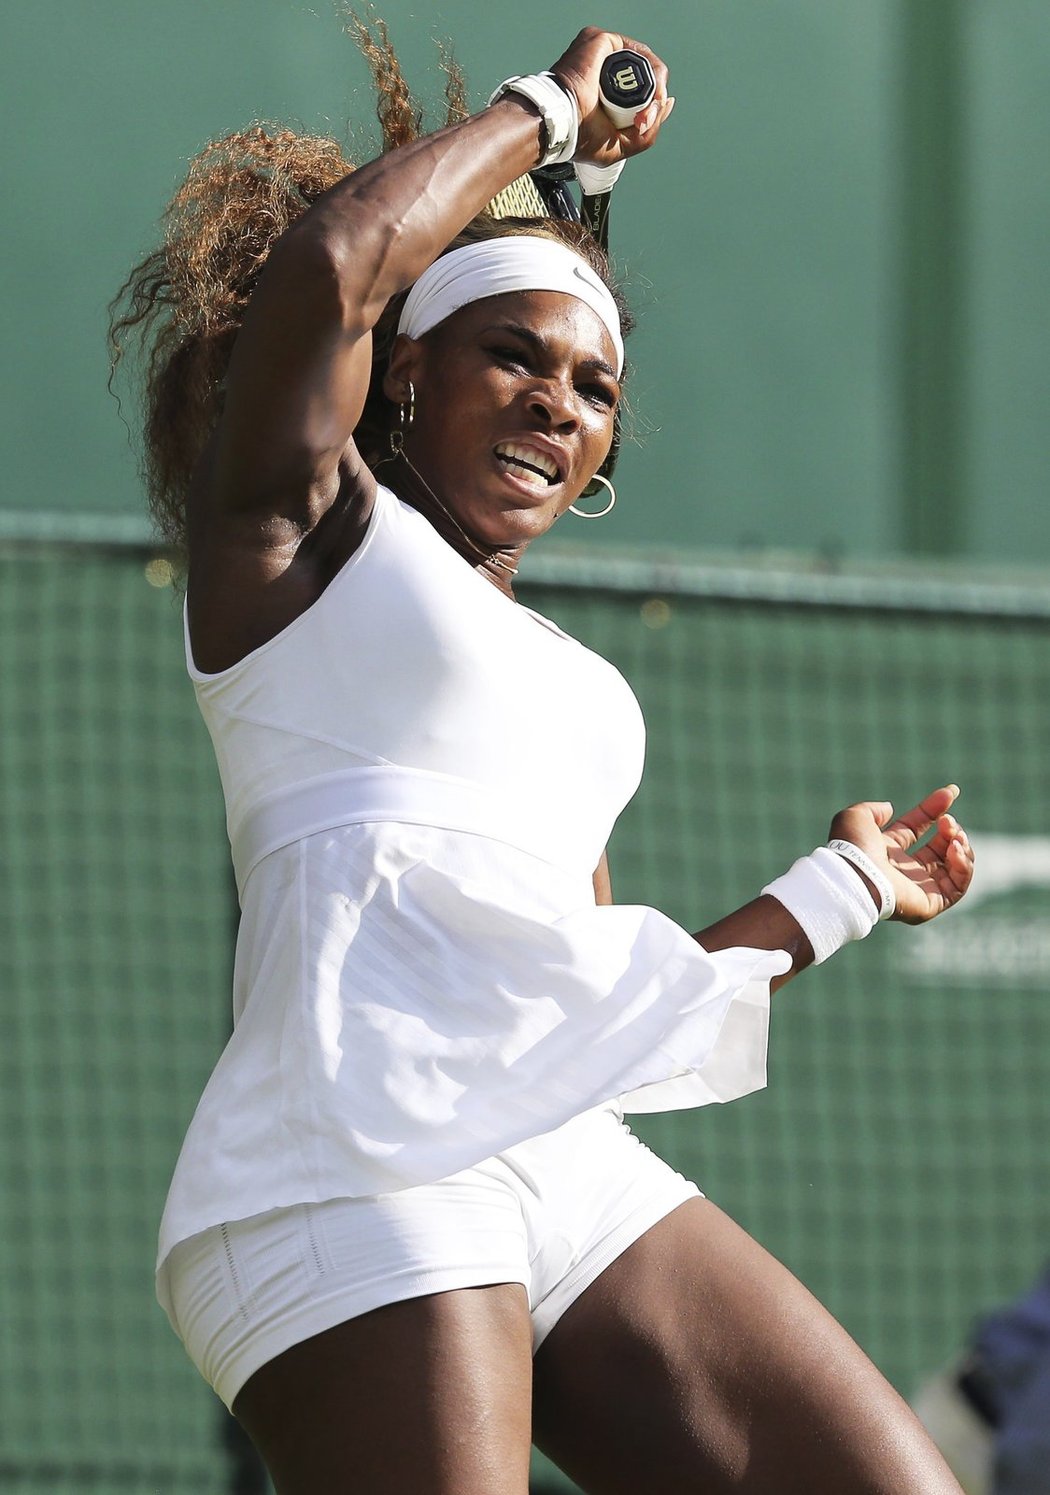 Letos už je i extravagantní Serena Williamsová celá v bílém, přísná pravidla žádnou barvu neumožňují